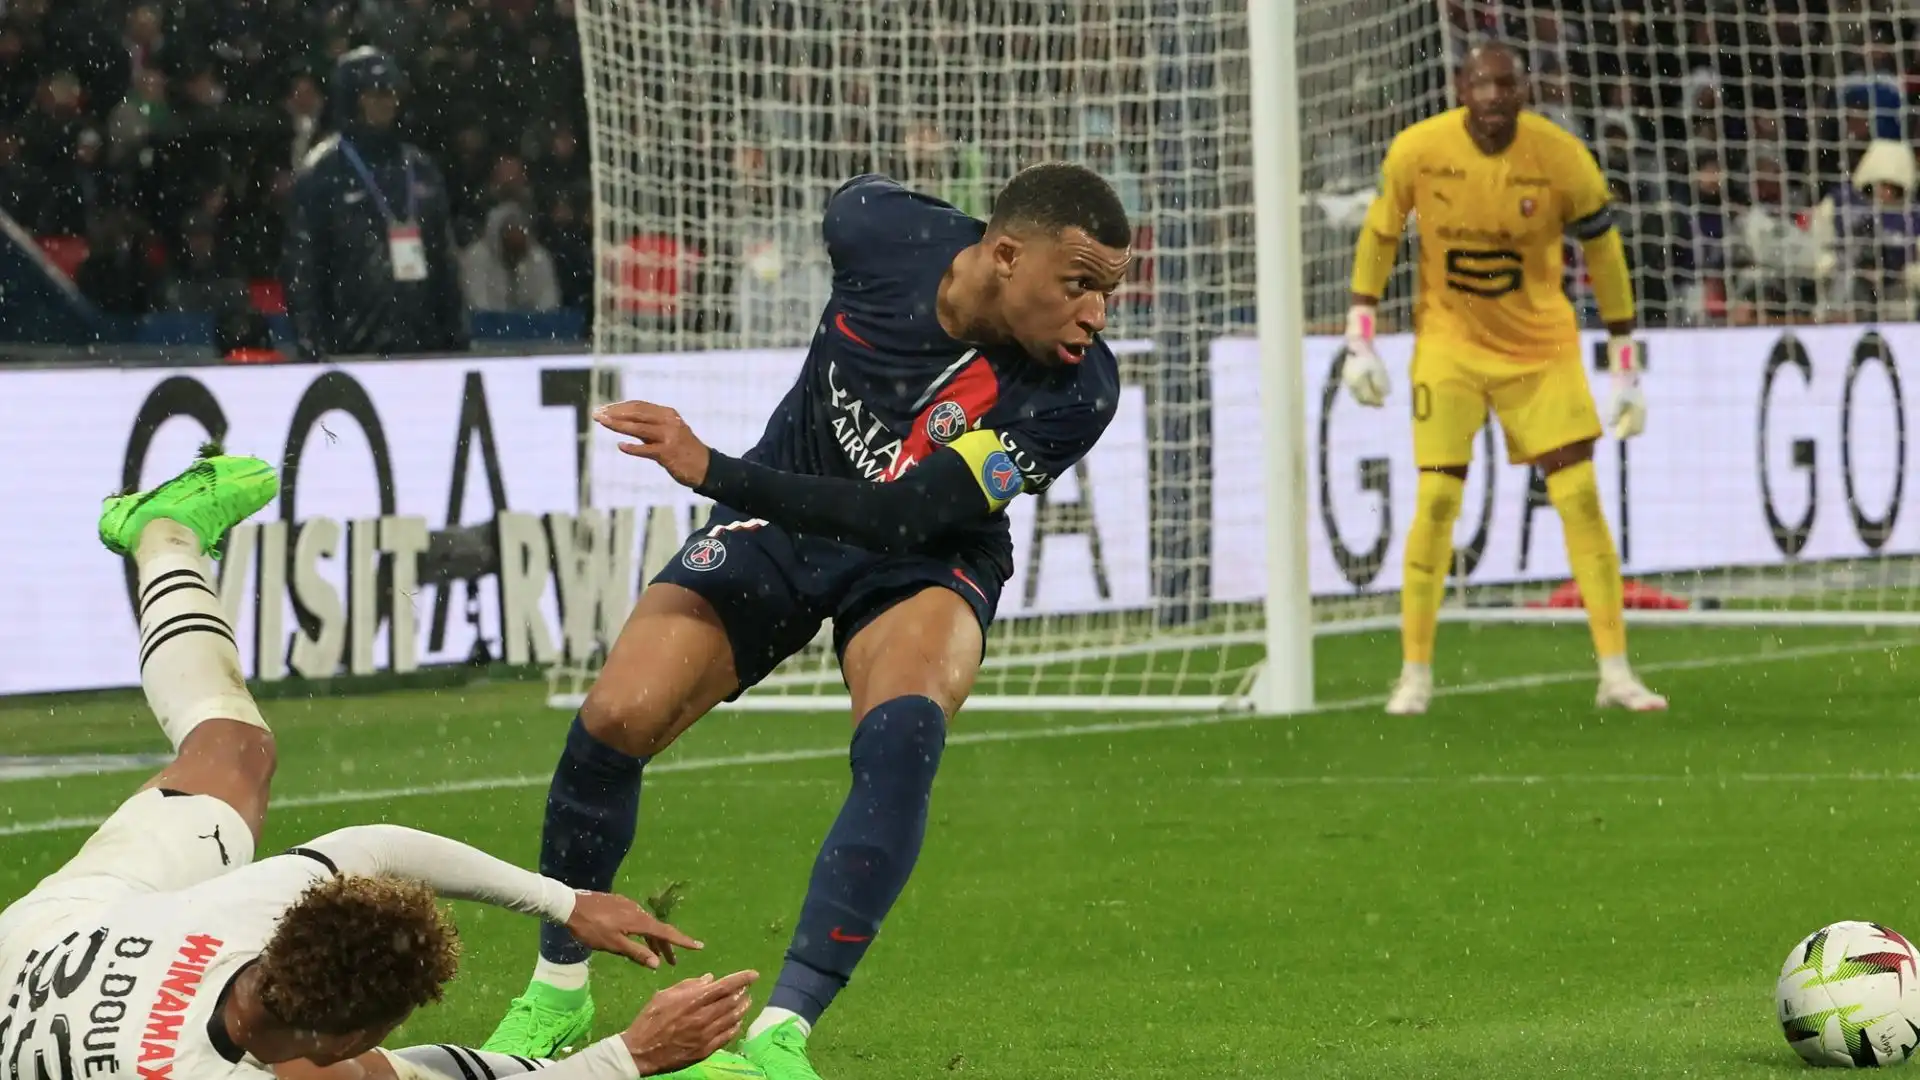 L'attaccante francese ha segnato 250 reti in 297 partite tra campionato e coppe a Parigi